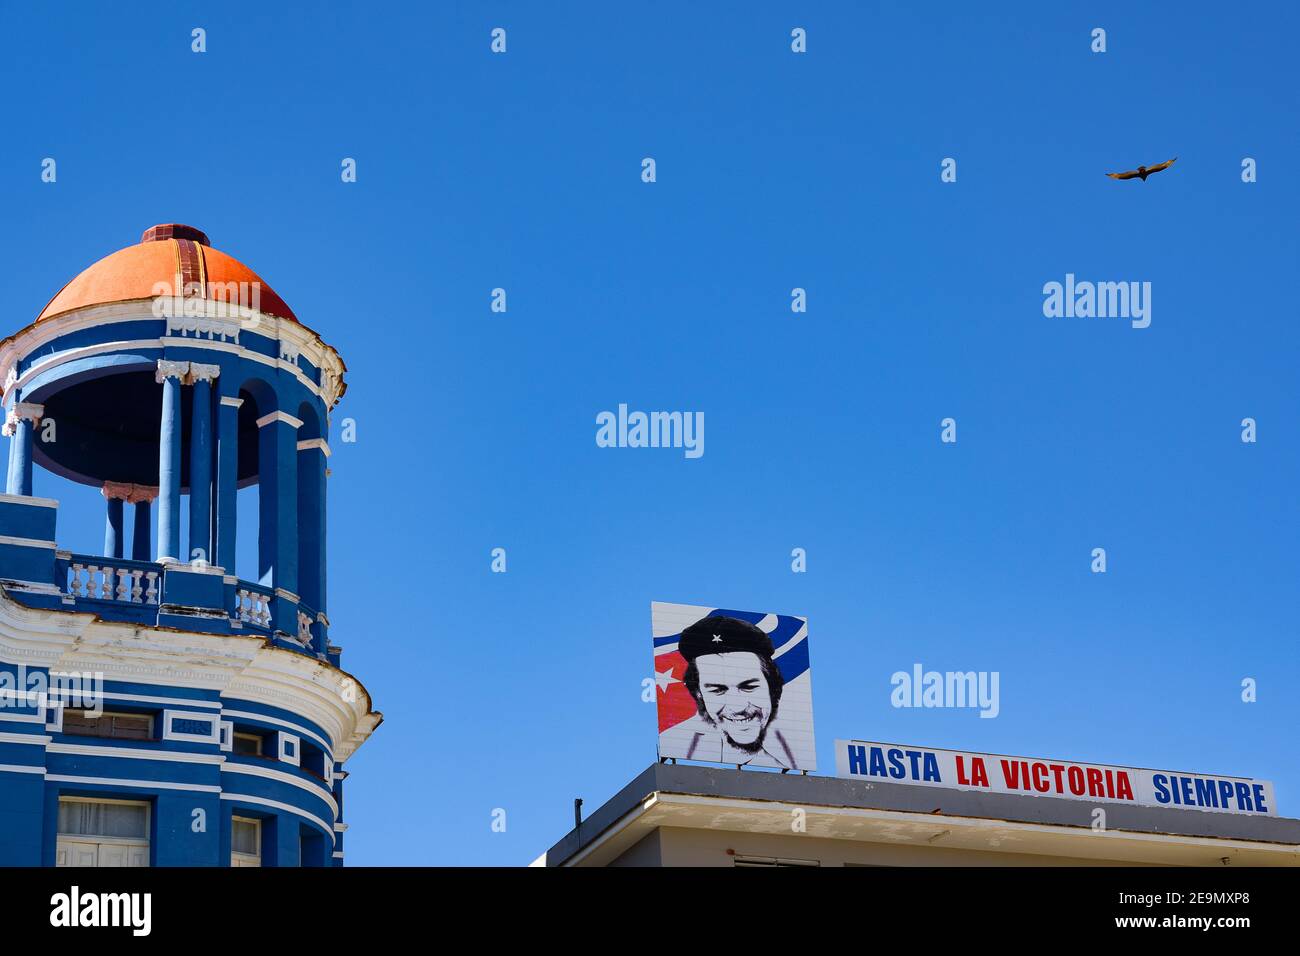 Eine Plakatwand in Camagüey, Kuba neben dem Centro de Convenciones Santa Cecilia mit dem Che Guevara Sprichwort ¡Hasta la victoria Siempre! Stockfoto